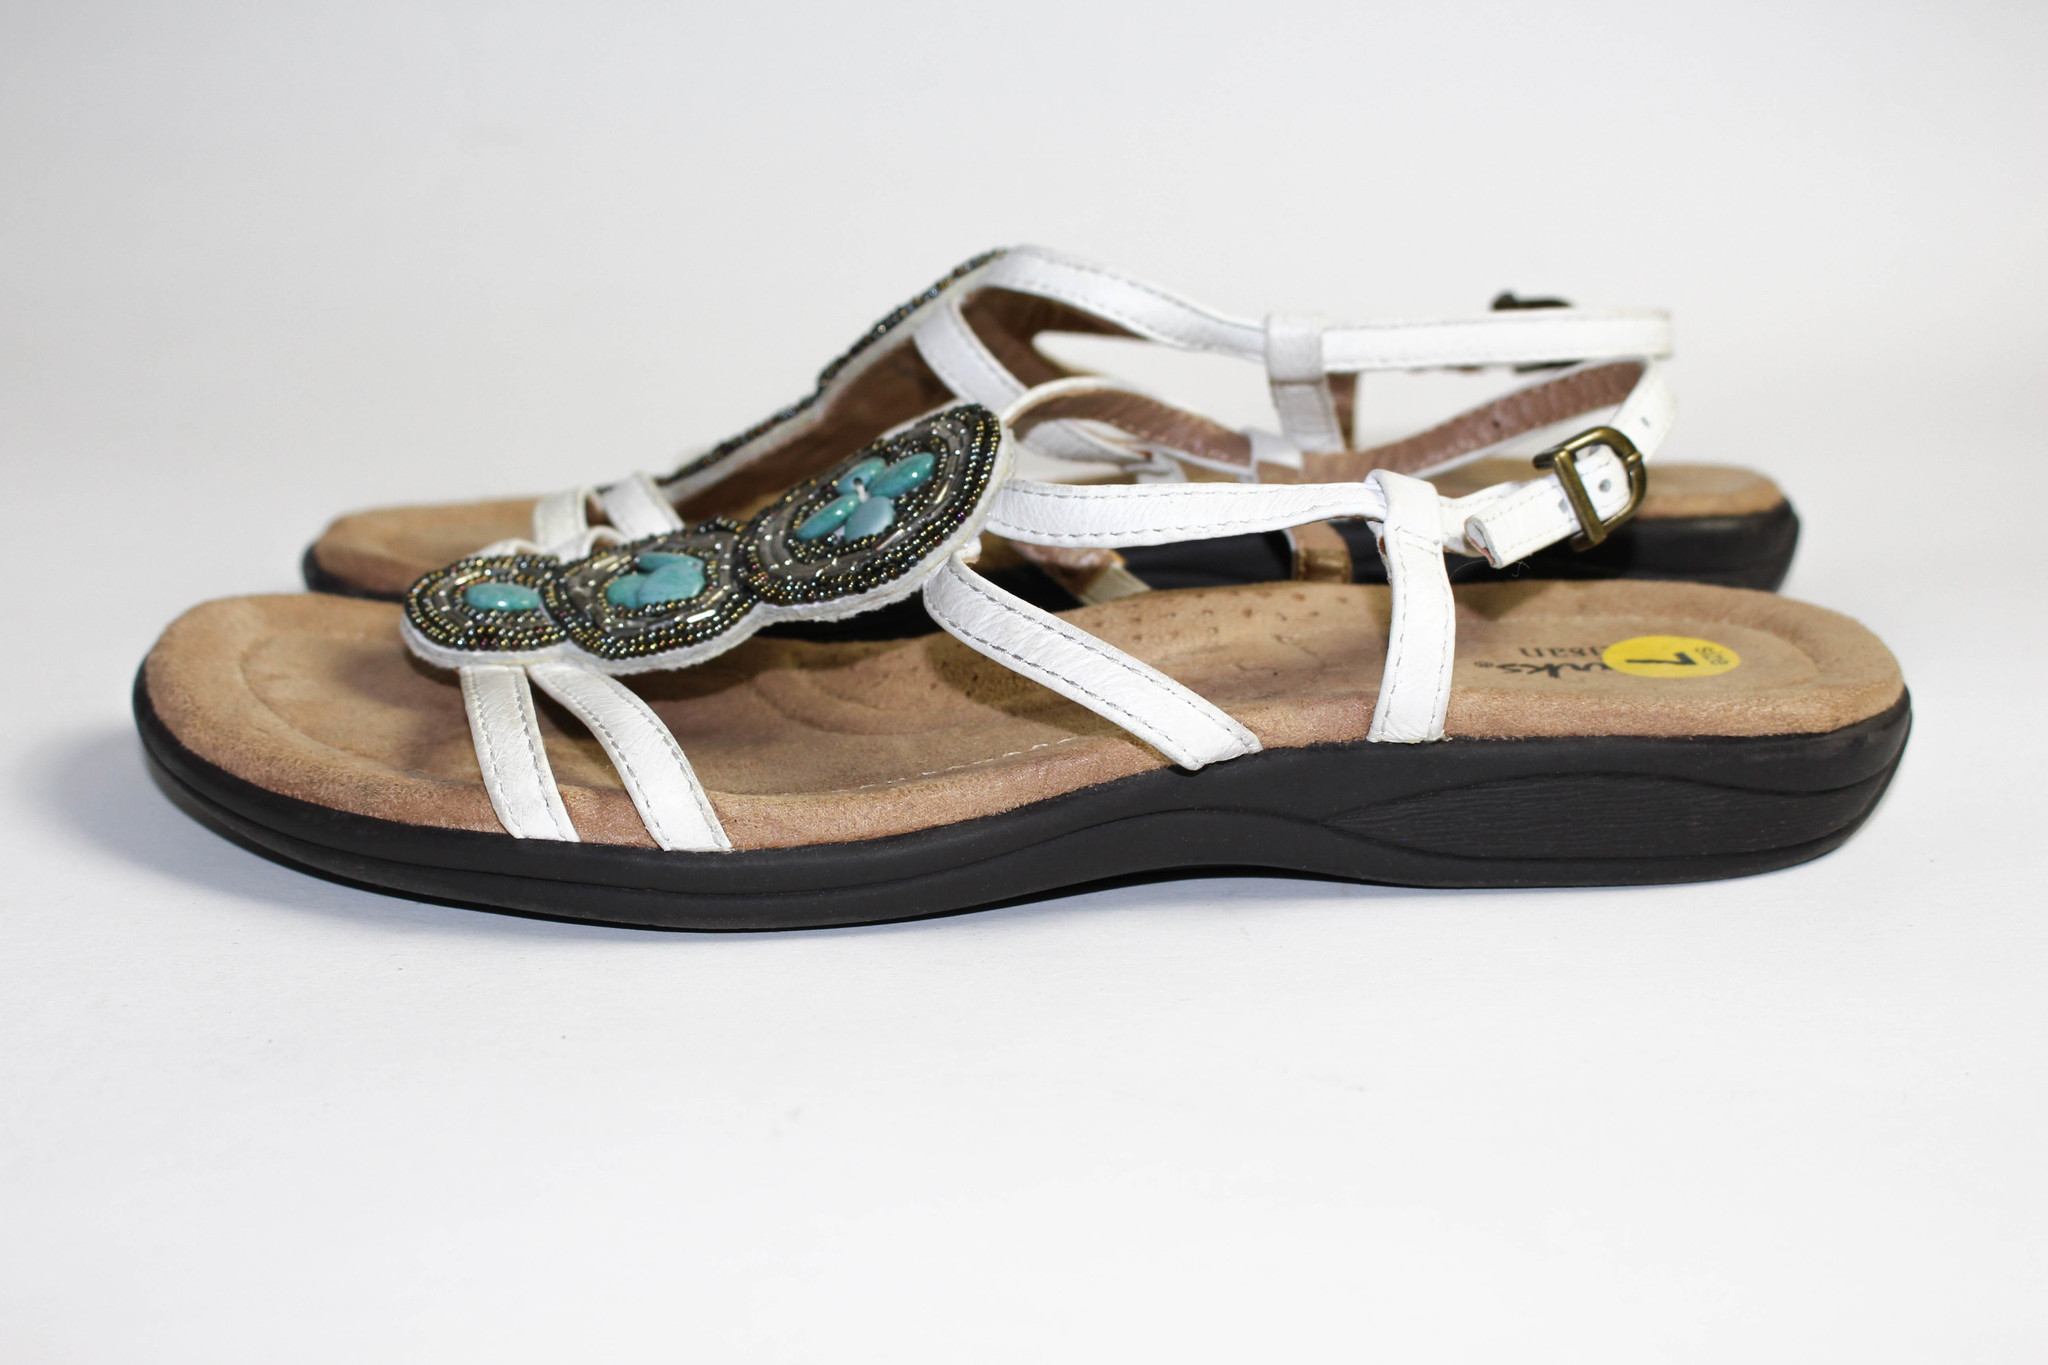 clarks artisan white sandals